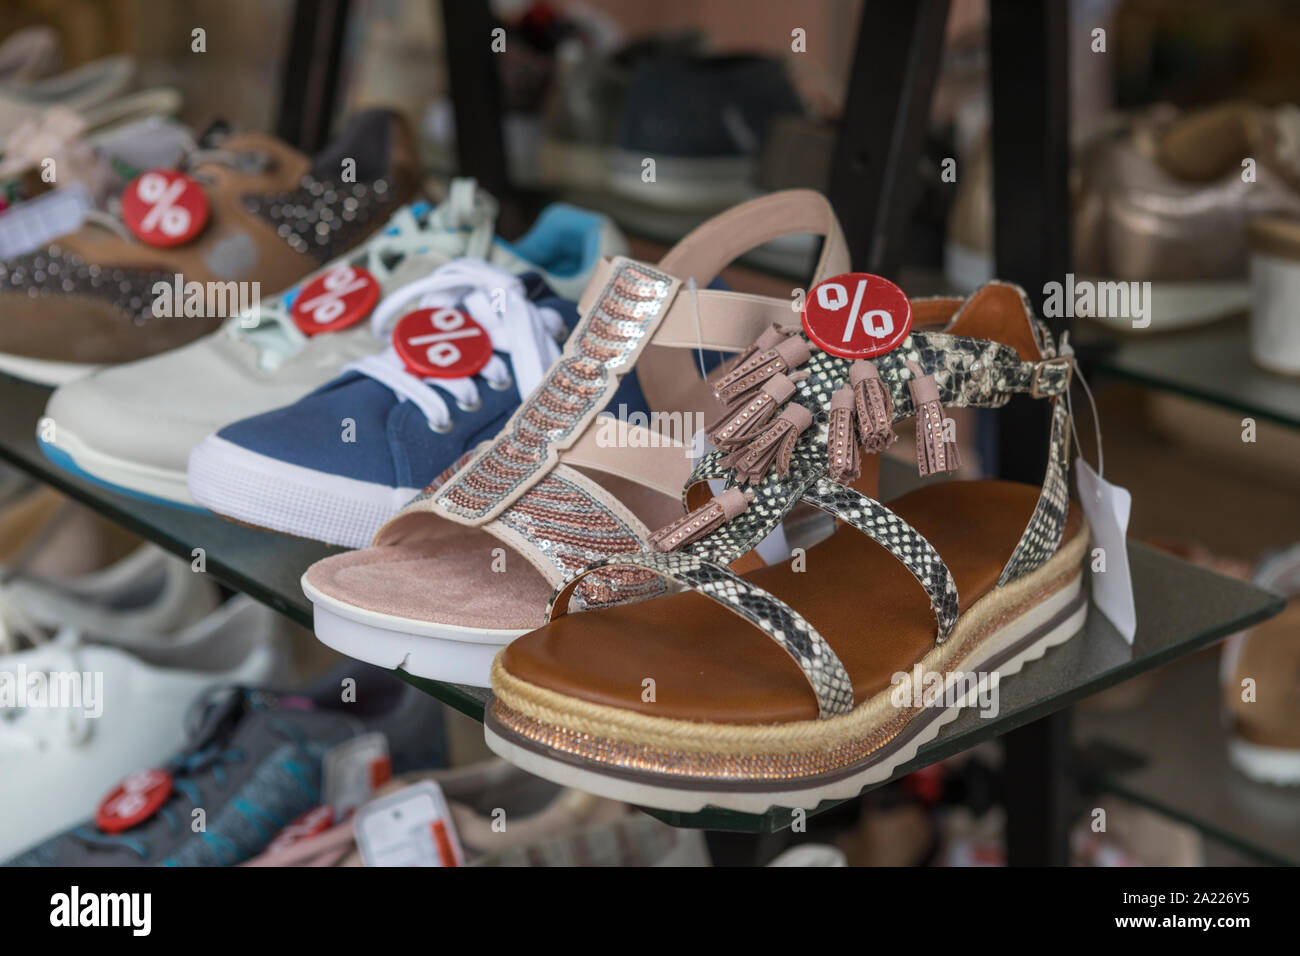 Scarpe in attesa di un acquirente in un negozio in Germania Foto Stock